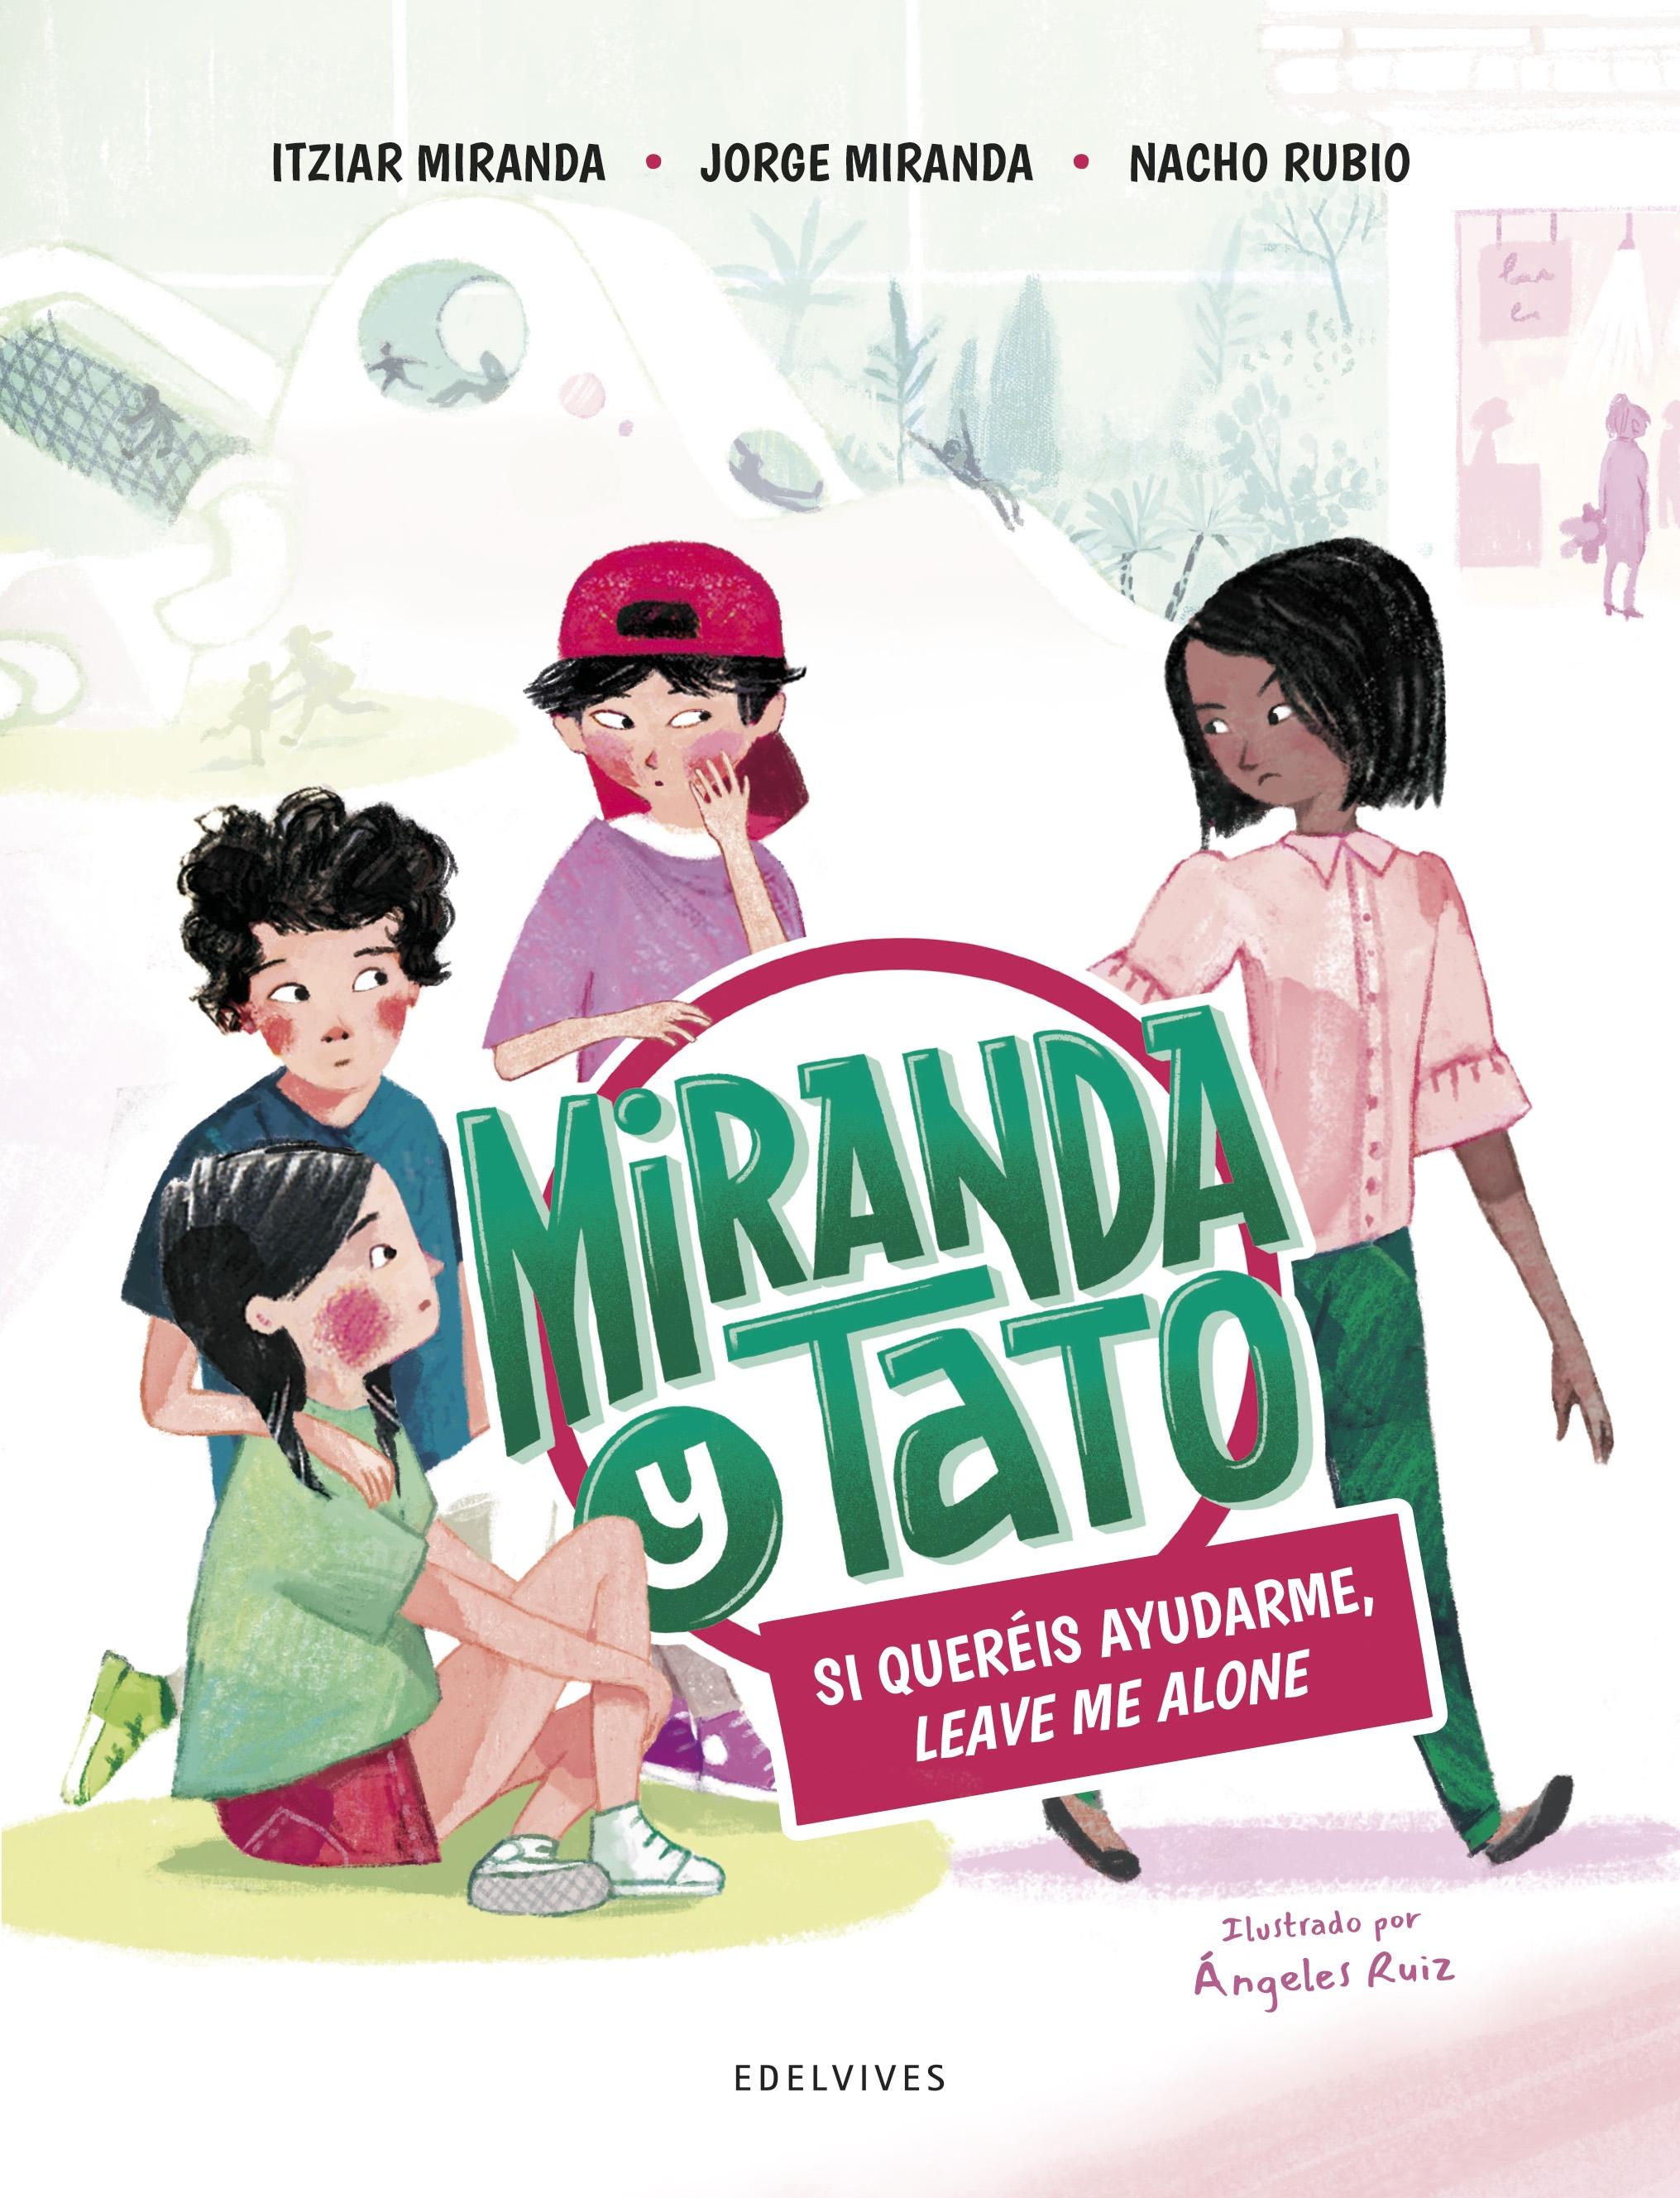 Miranda y Tato 2 "Si queréis ayudarme leave me alone"